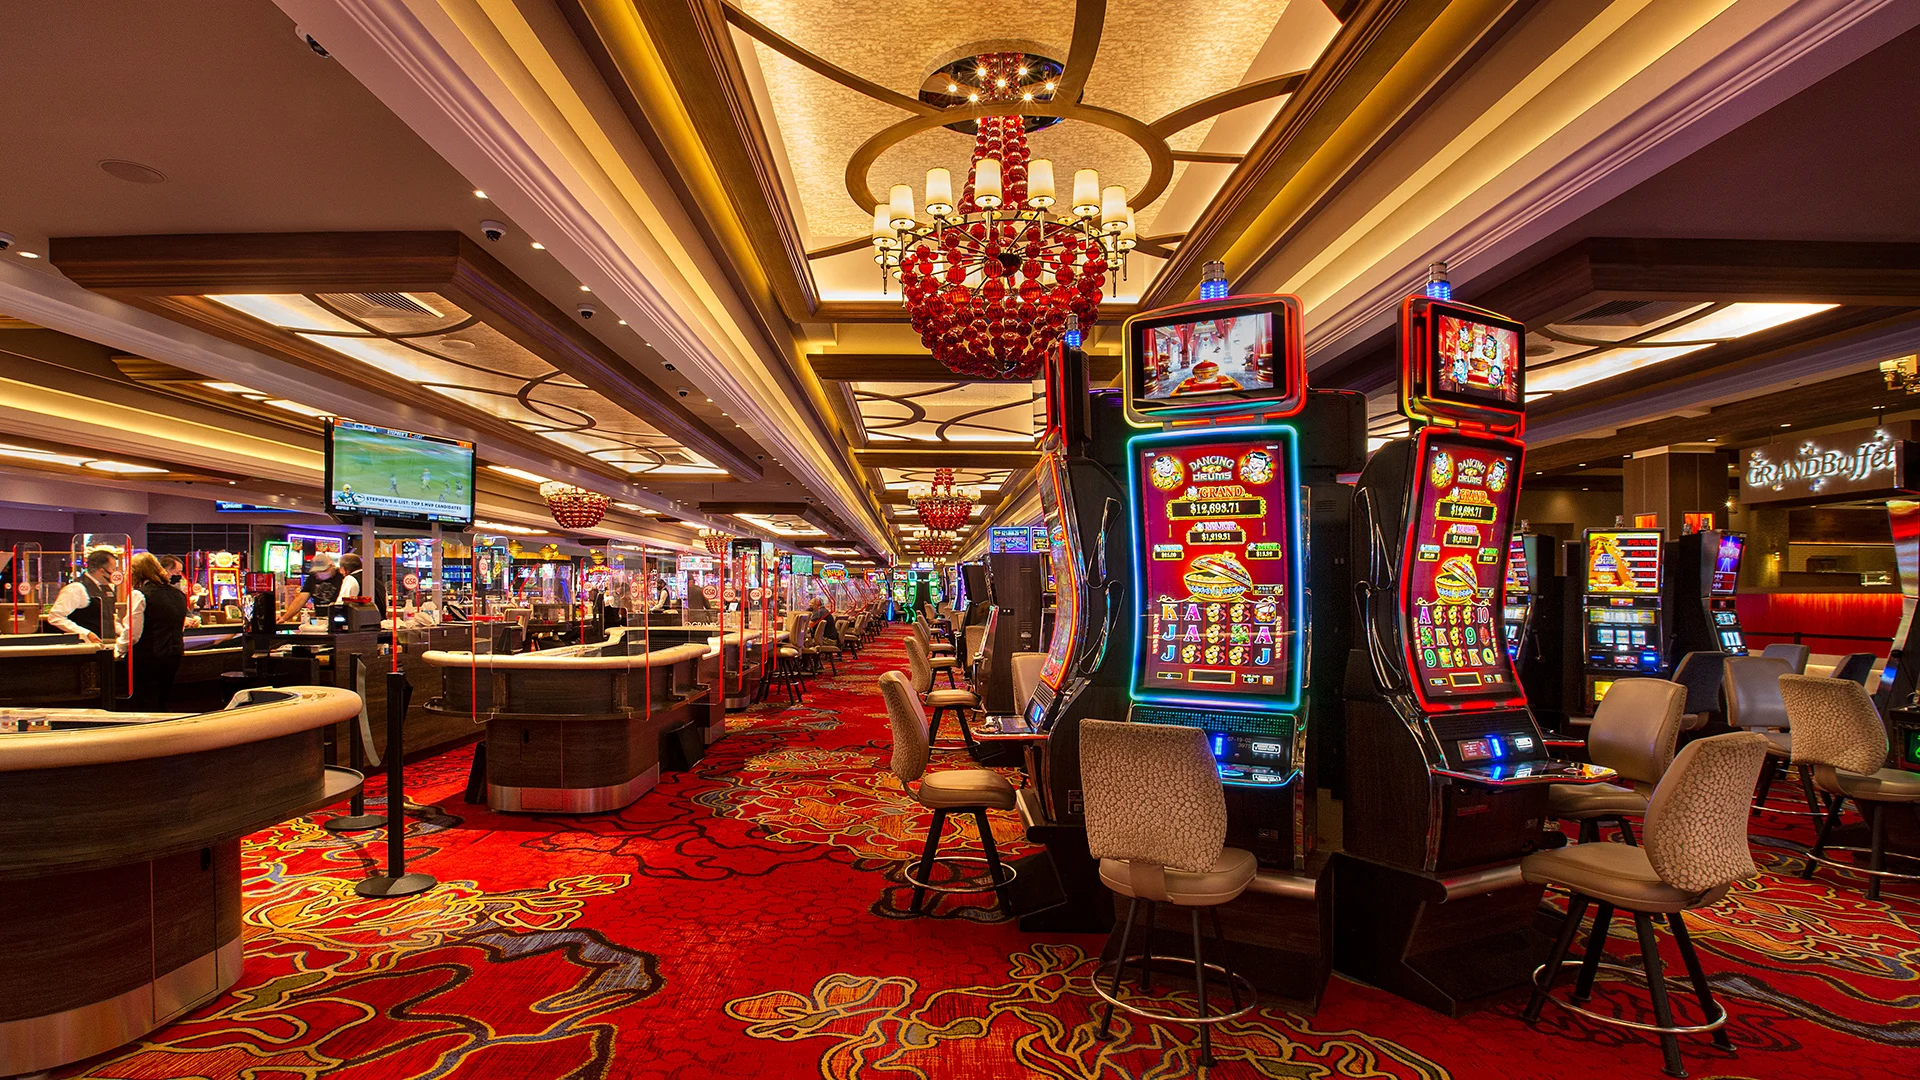 Lumi Online Casino: Where Fortune Favors the Brave